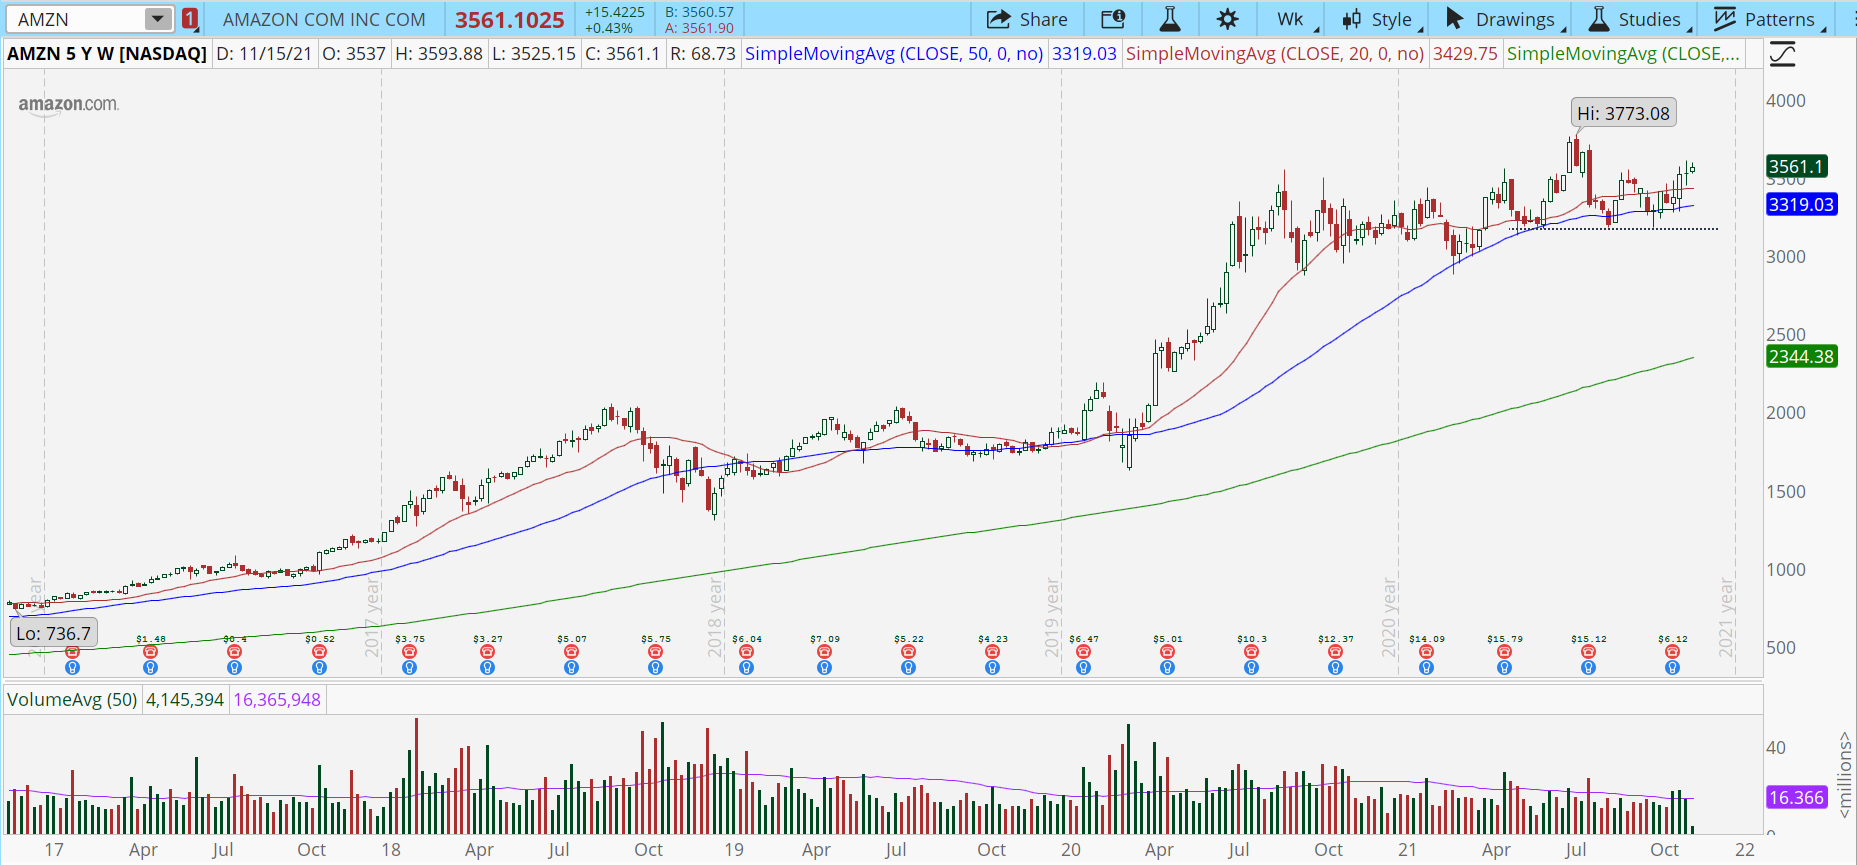 Amazon (AMZN) weekly stock chart with trading range.